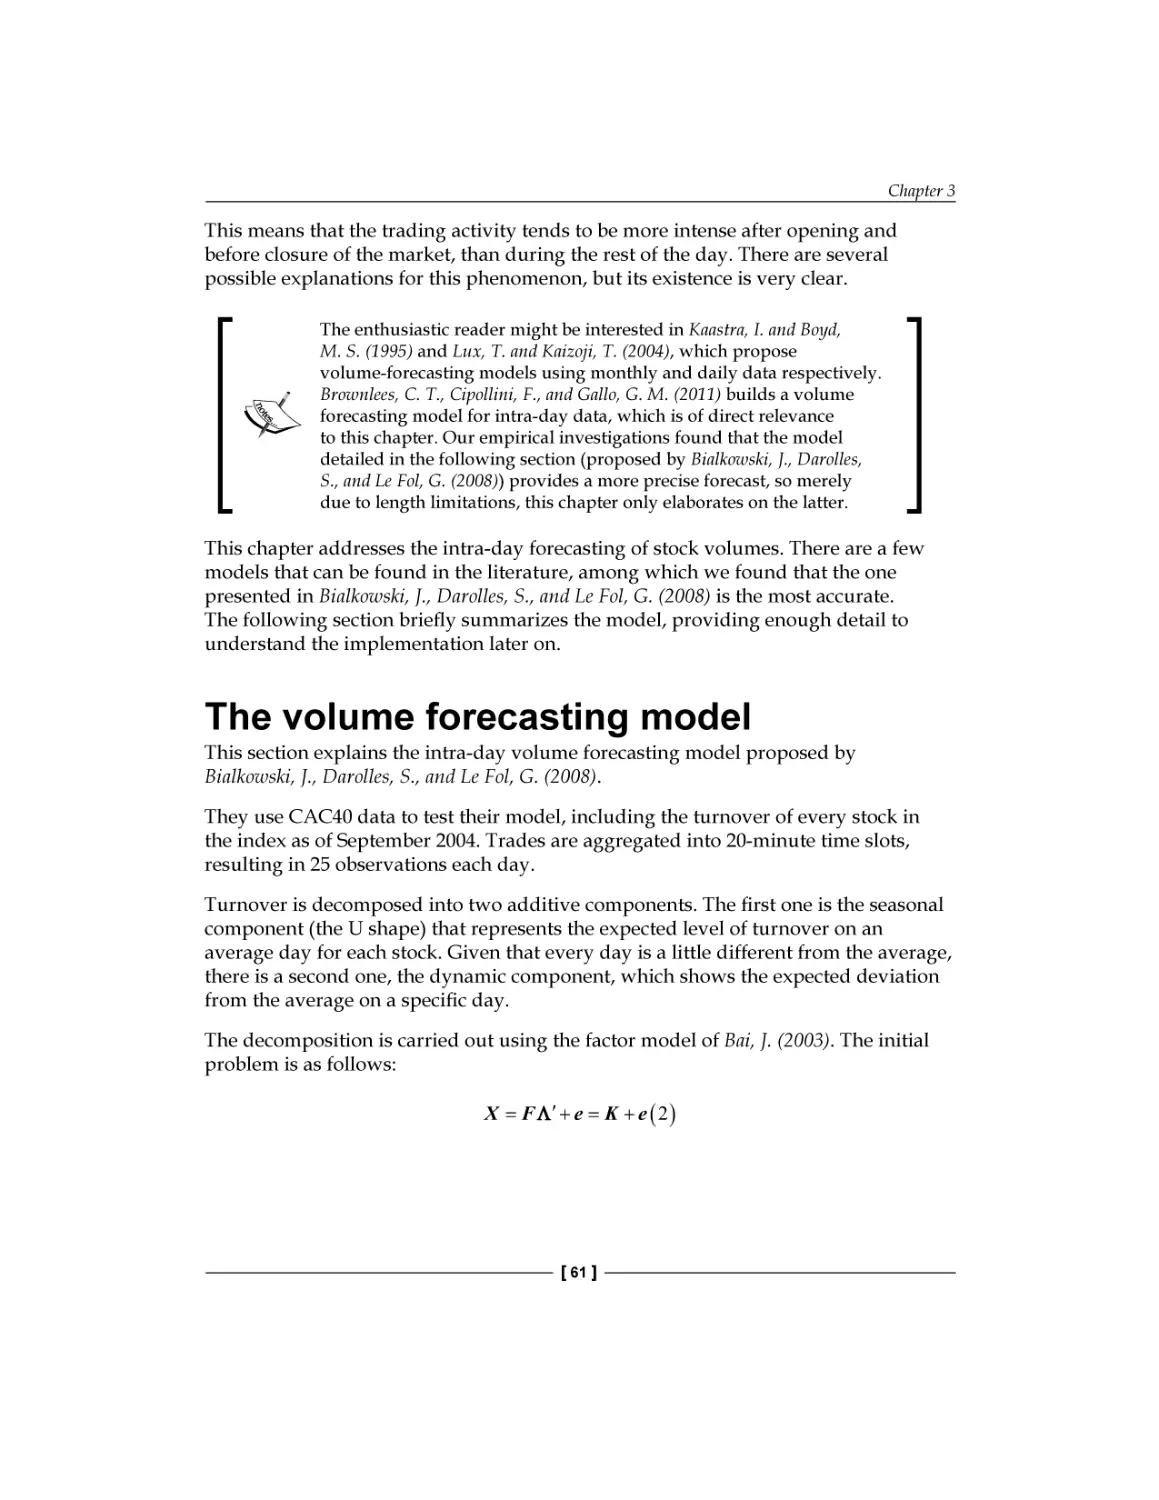 The volume forecasting model